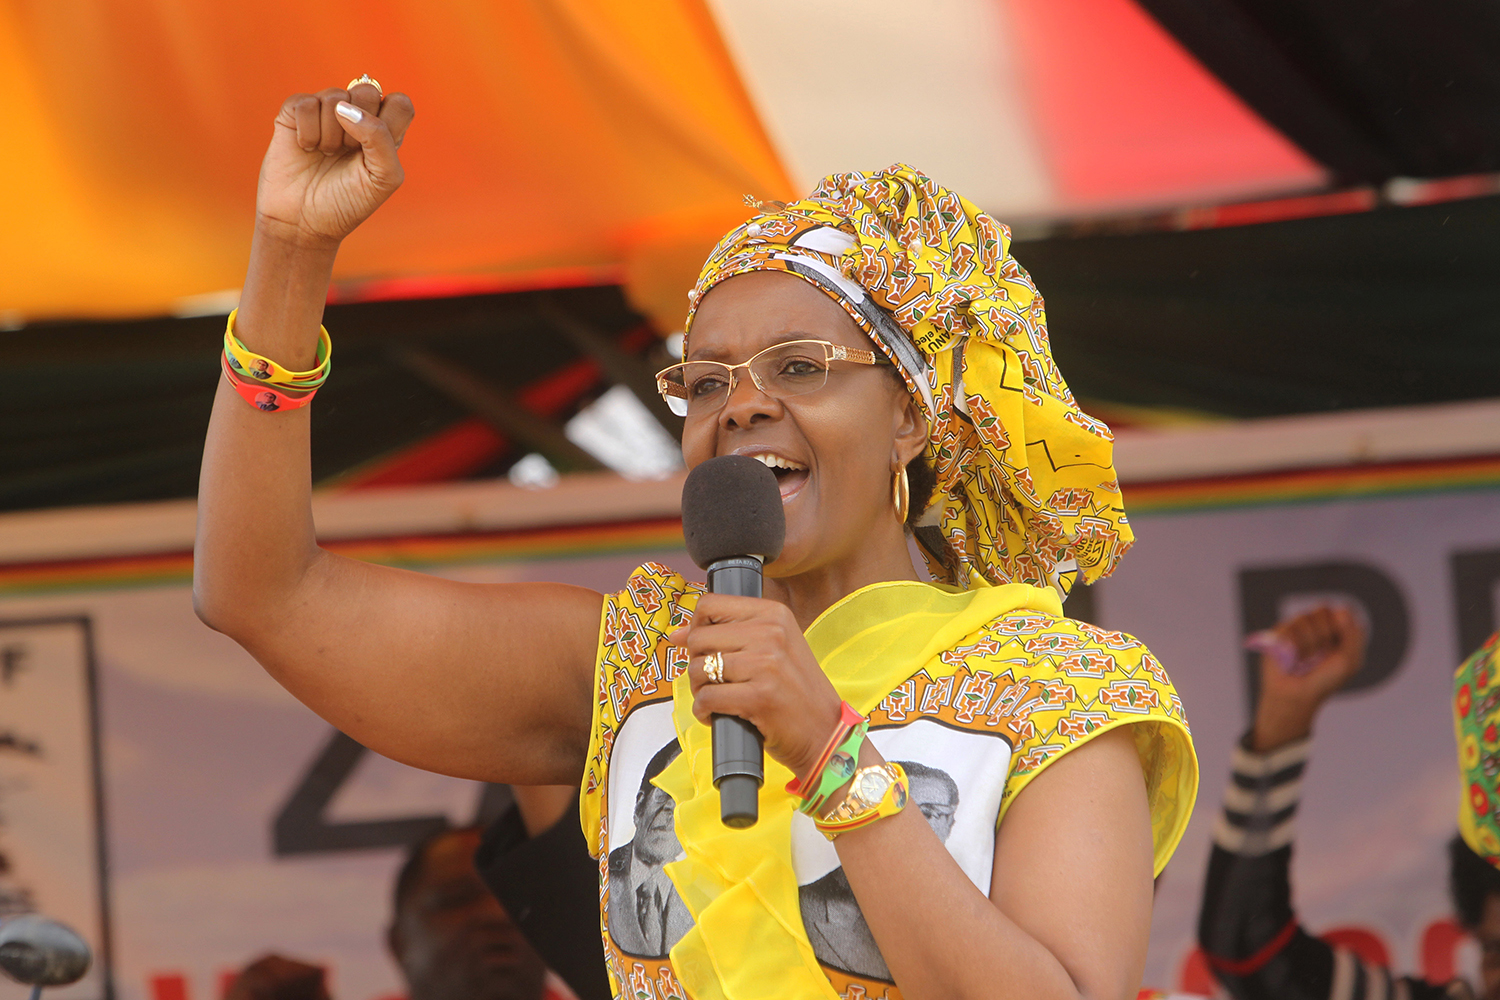 La primera dama de Zimbabue dice que la minifalda invita a la violación